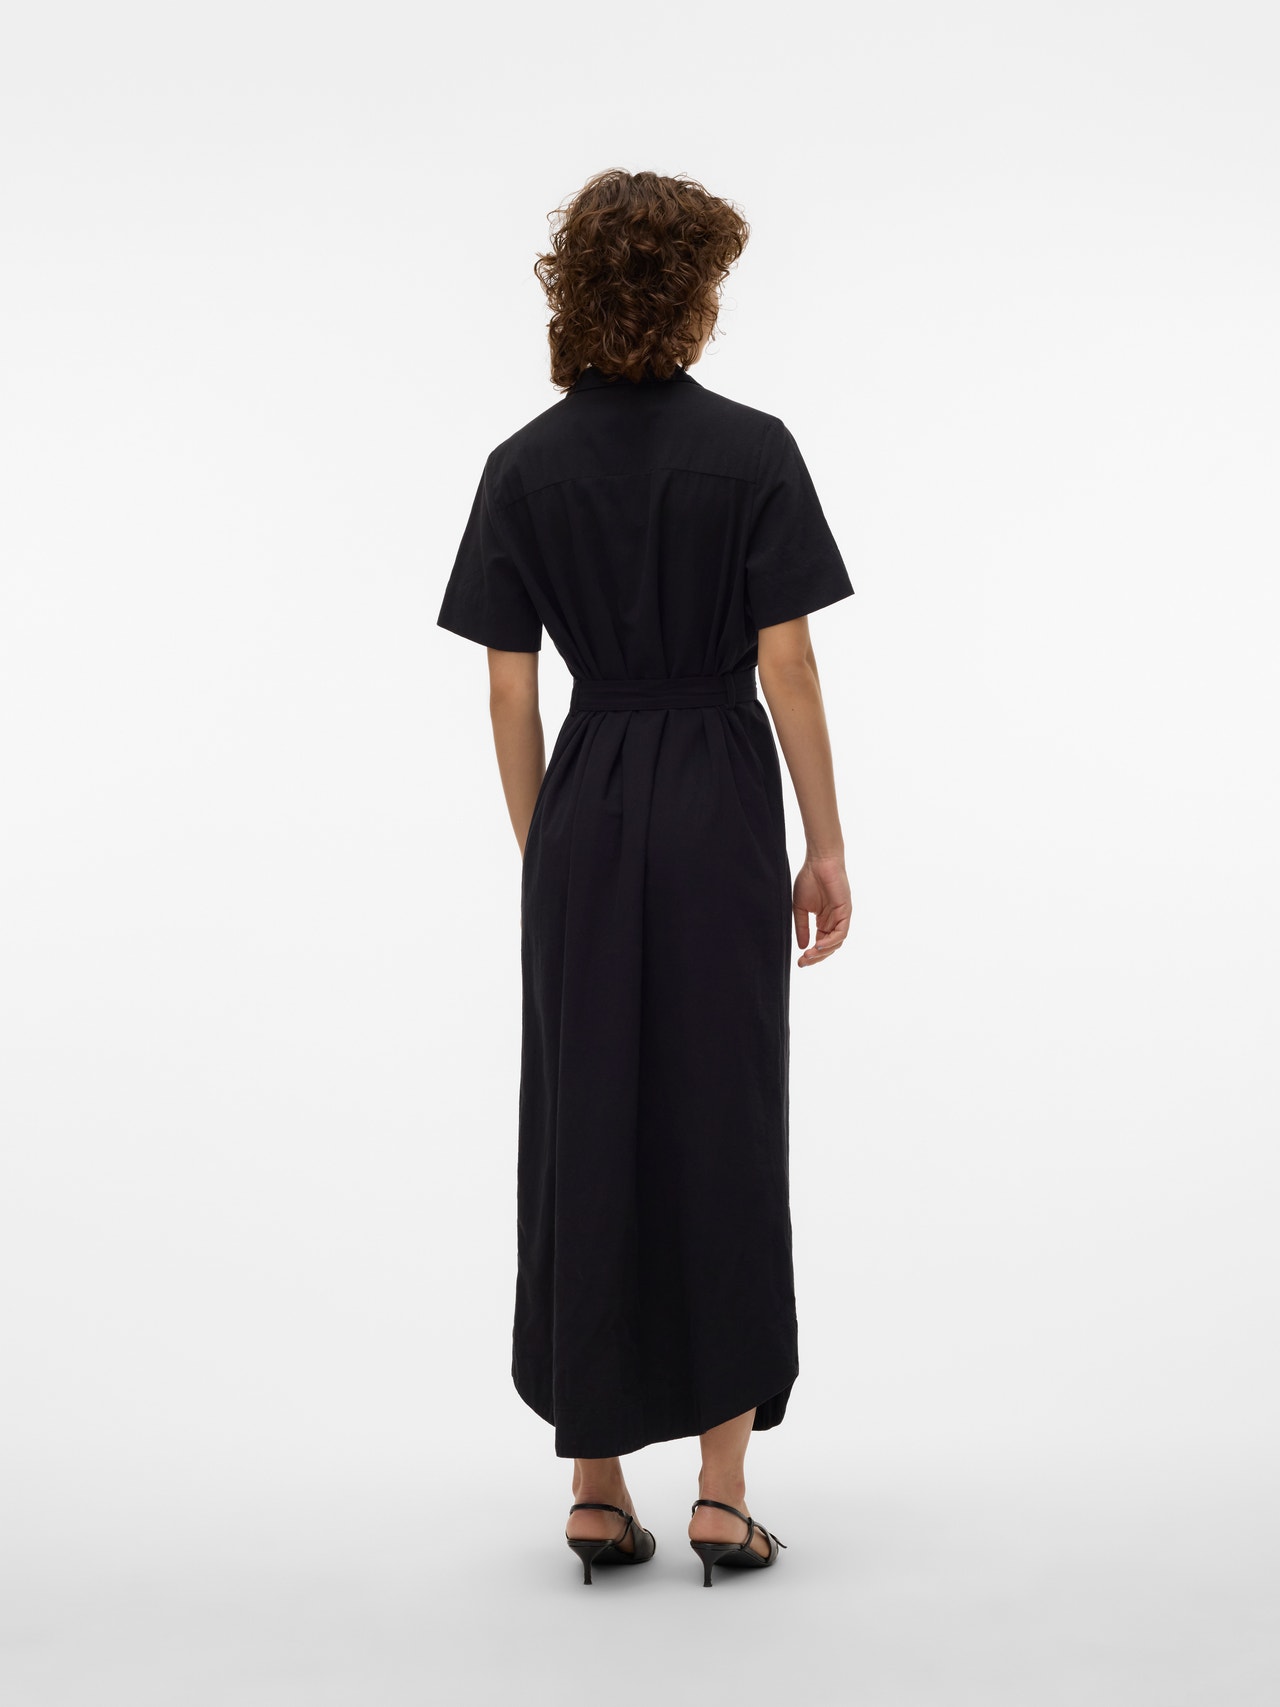 Vero Moda VMHART Robe longue -Black - 10303640